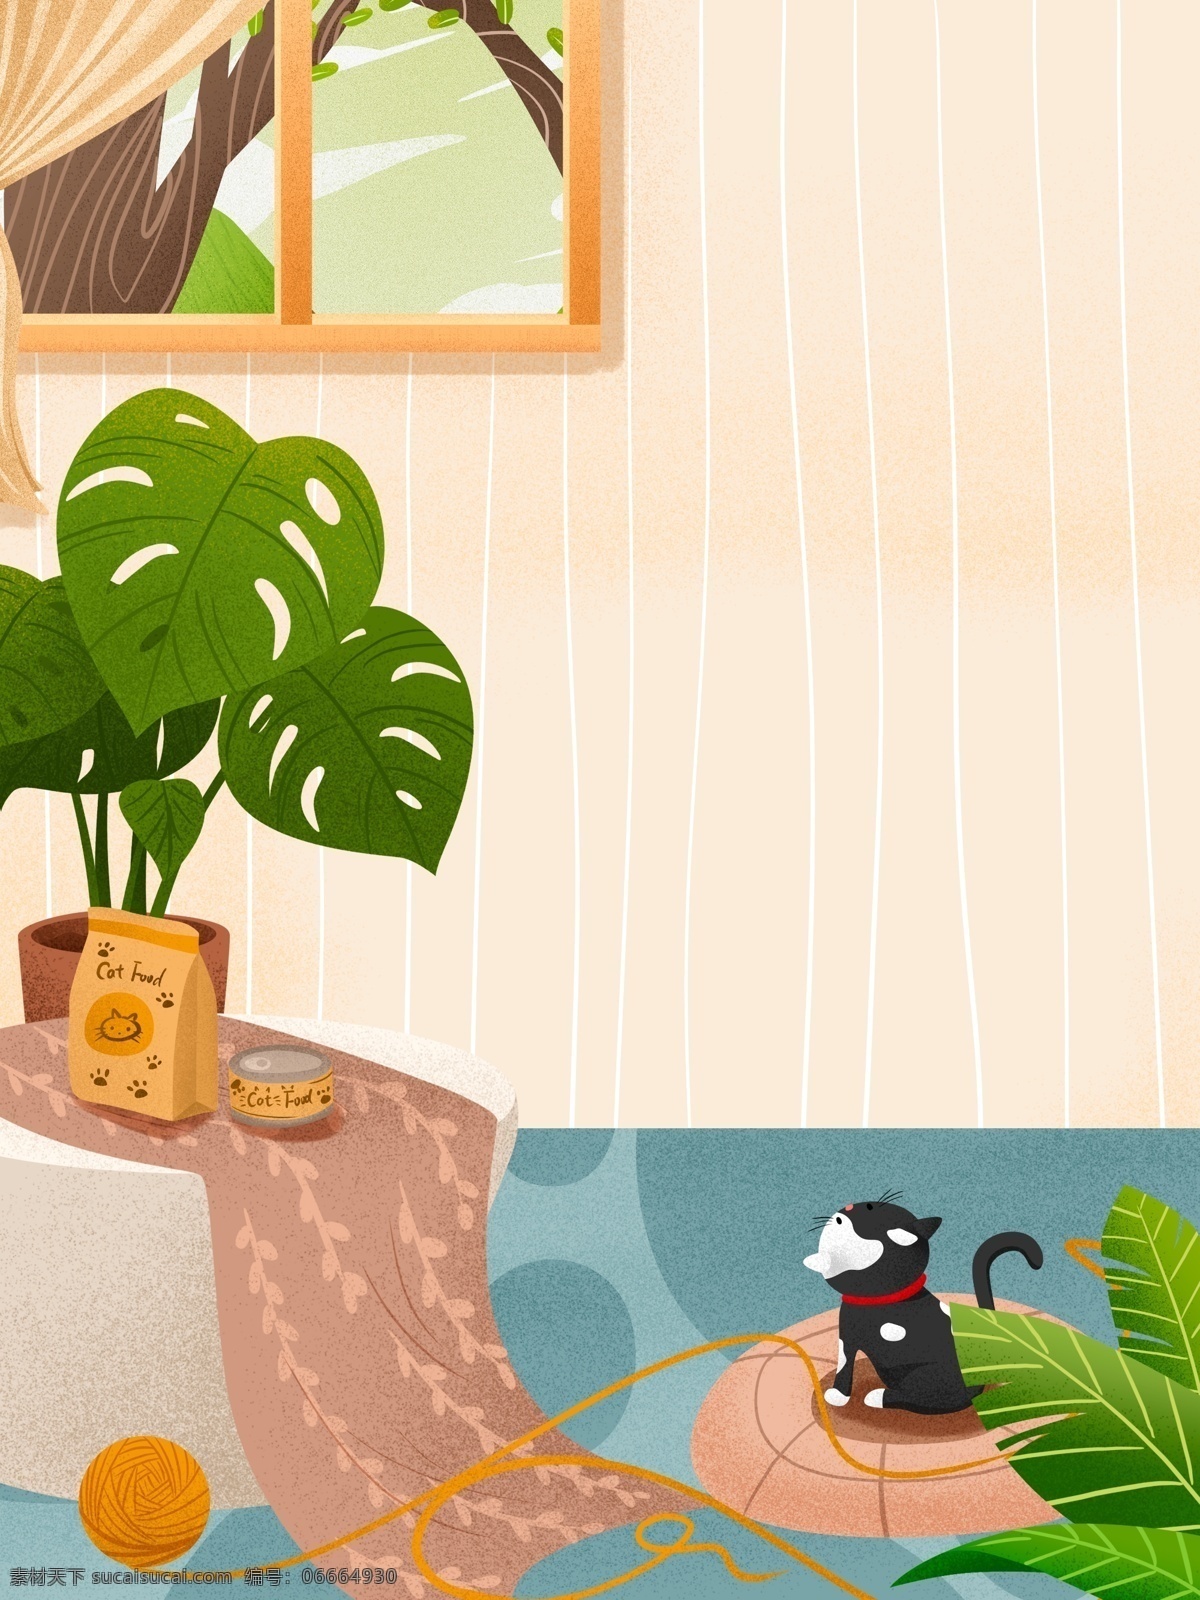 彩绘 温馨 家居 盆栽 背景 生活插画背景 卧室背景 居家背景 插画背景 小猫 植物背景 窗外